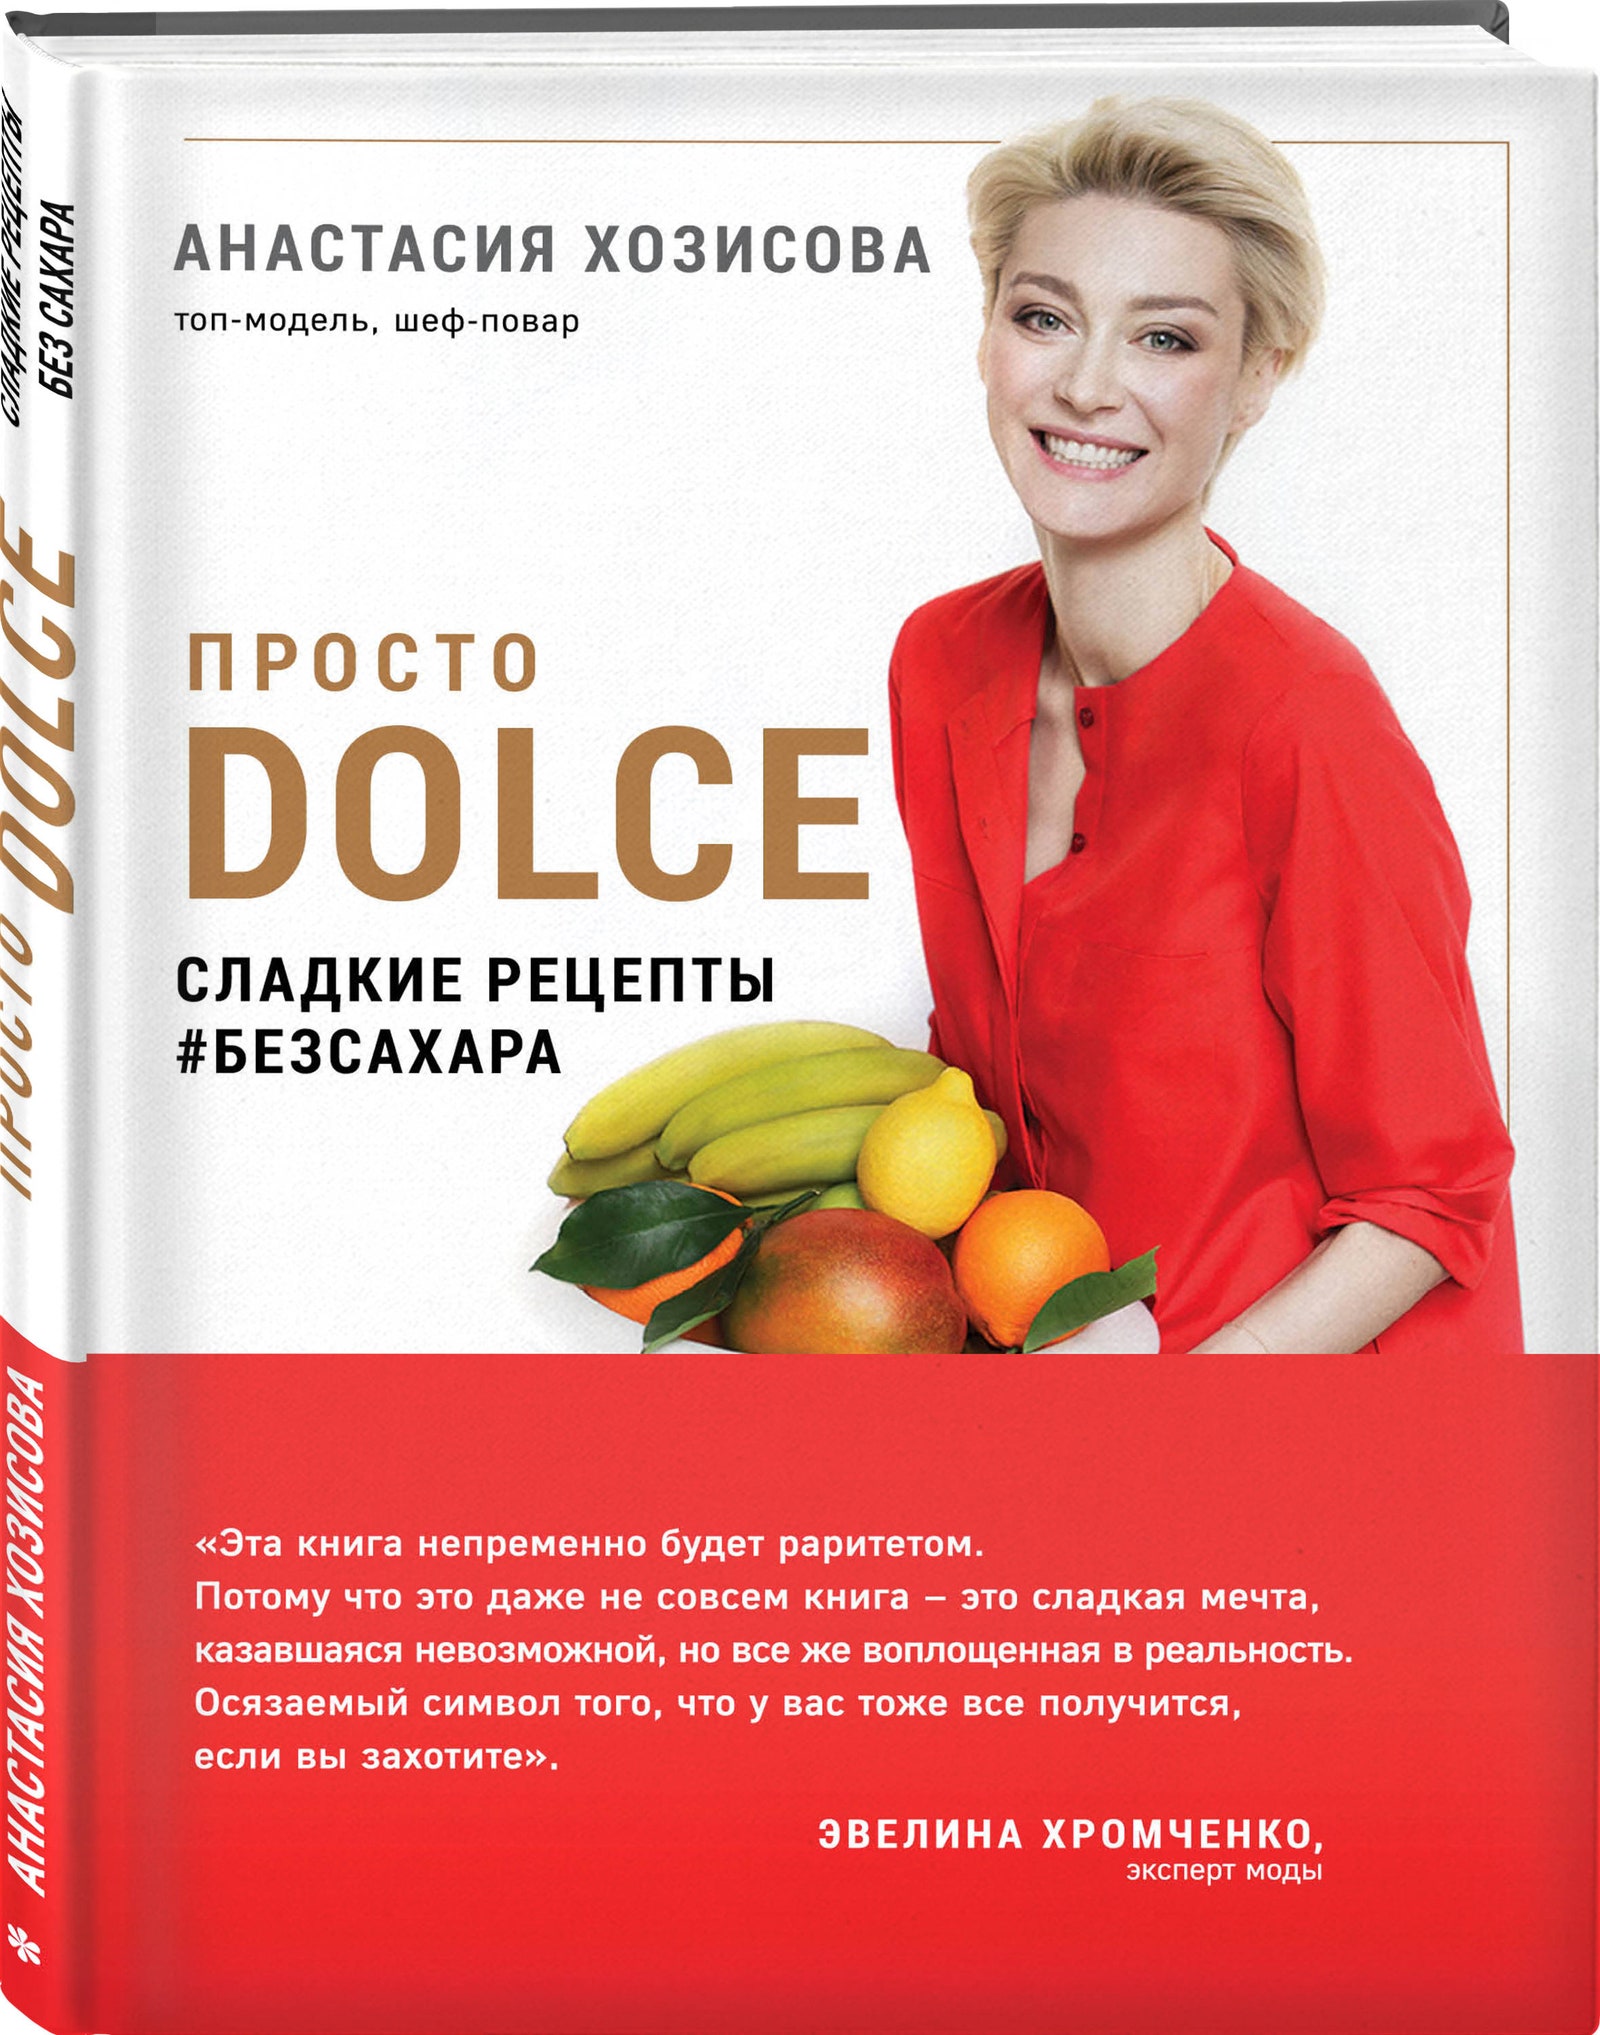 Модель Анастасия Хозисова выпустила кулинарную книгу с полезными десертами